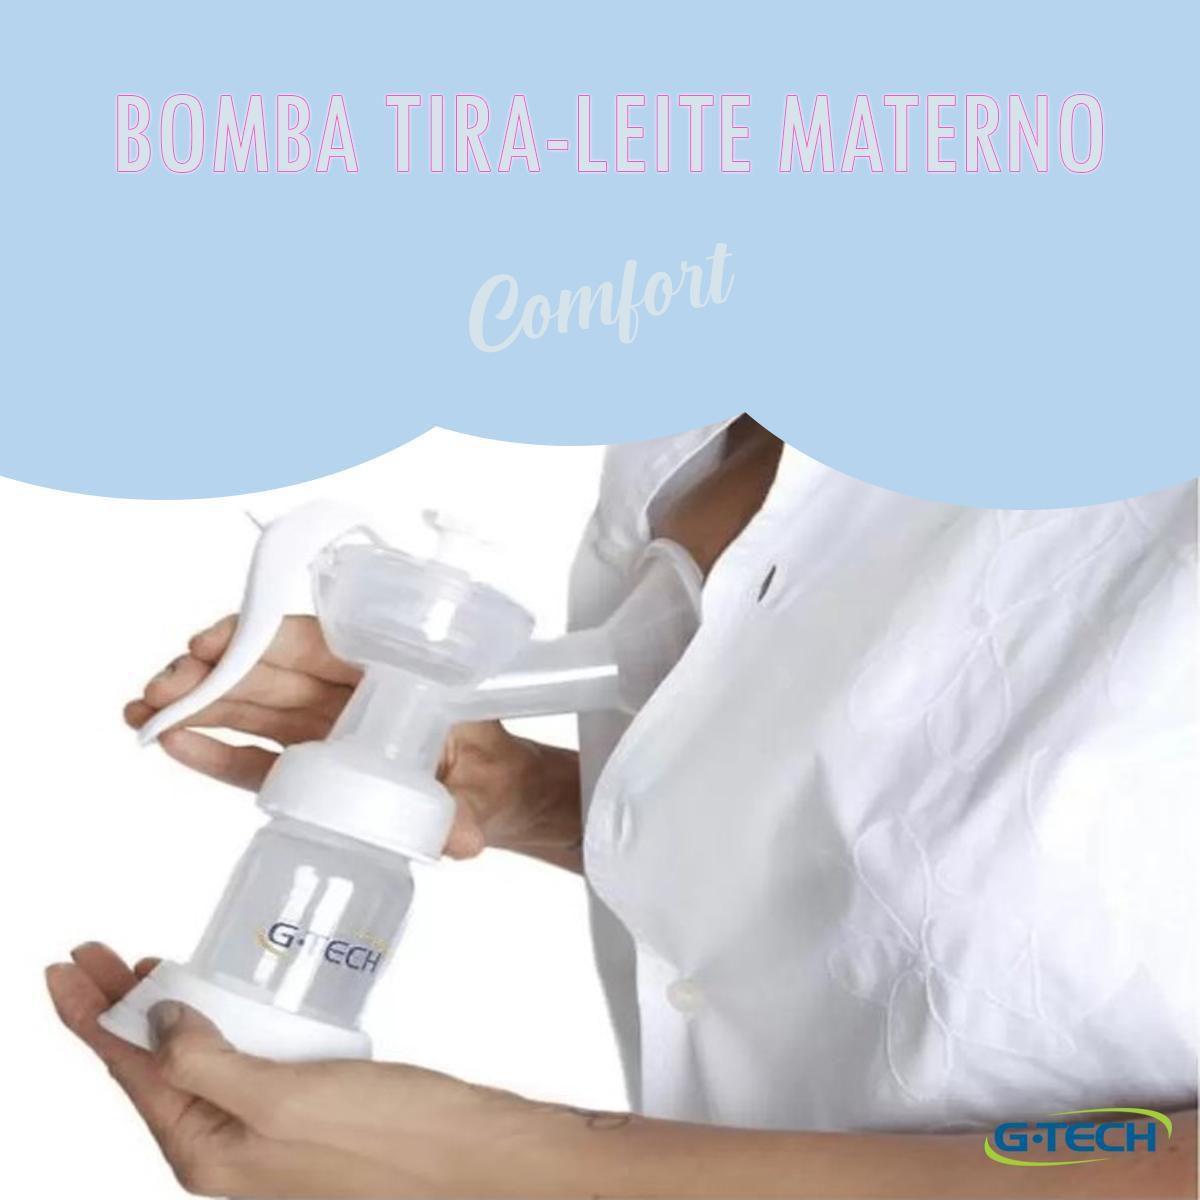 Bomba De Tira Leite Materno Confort - G-Tech